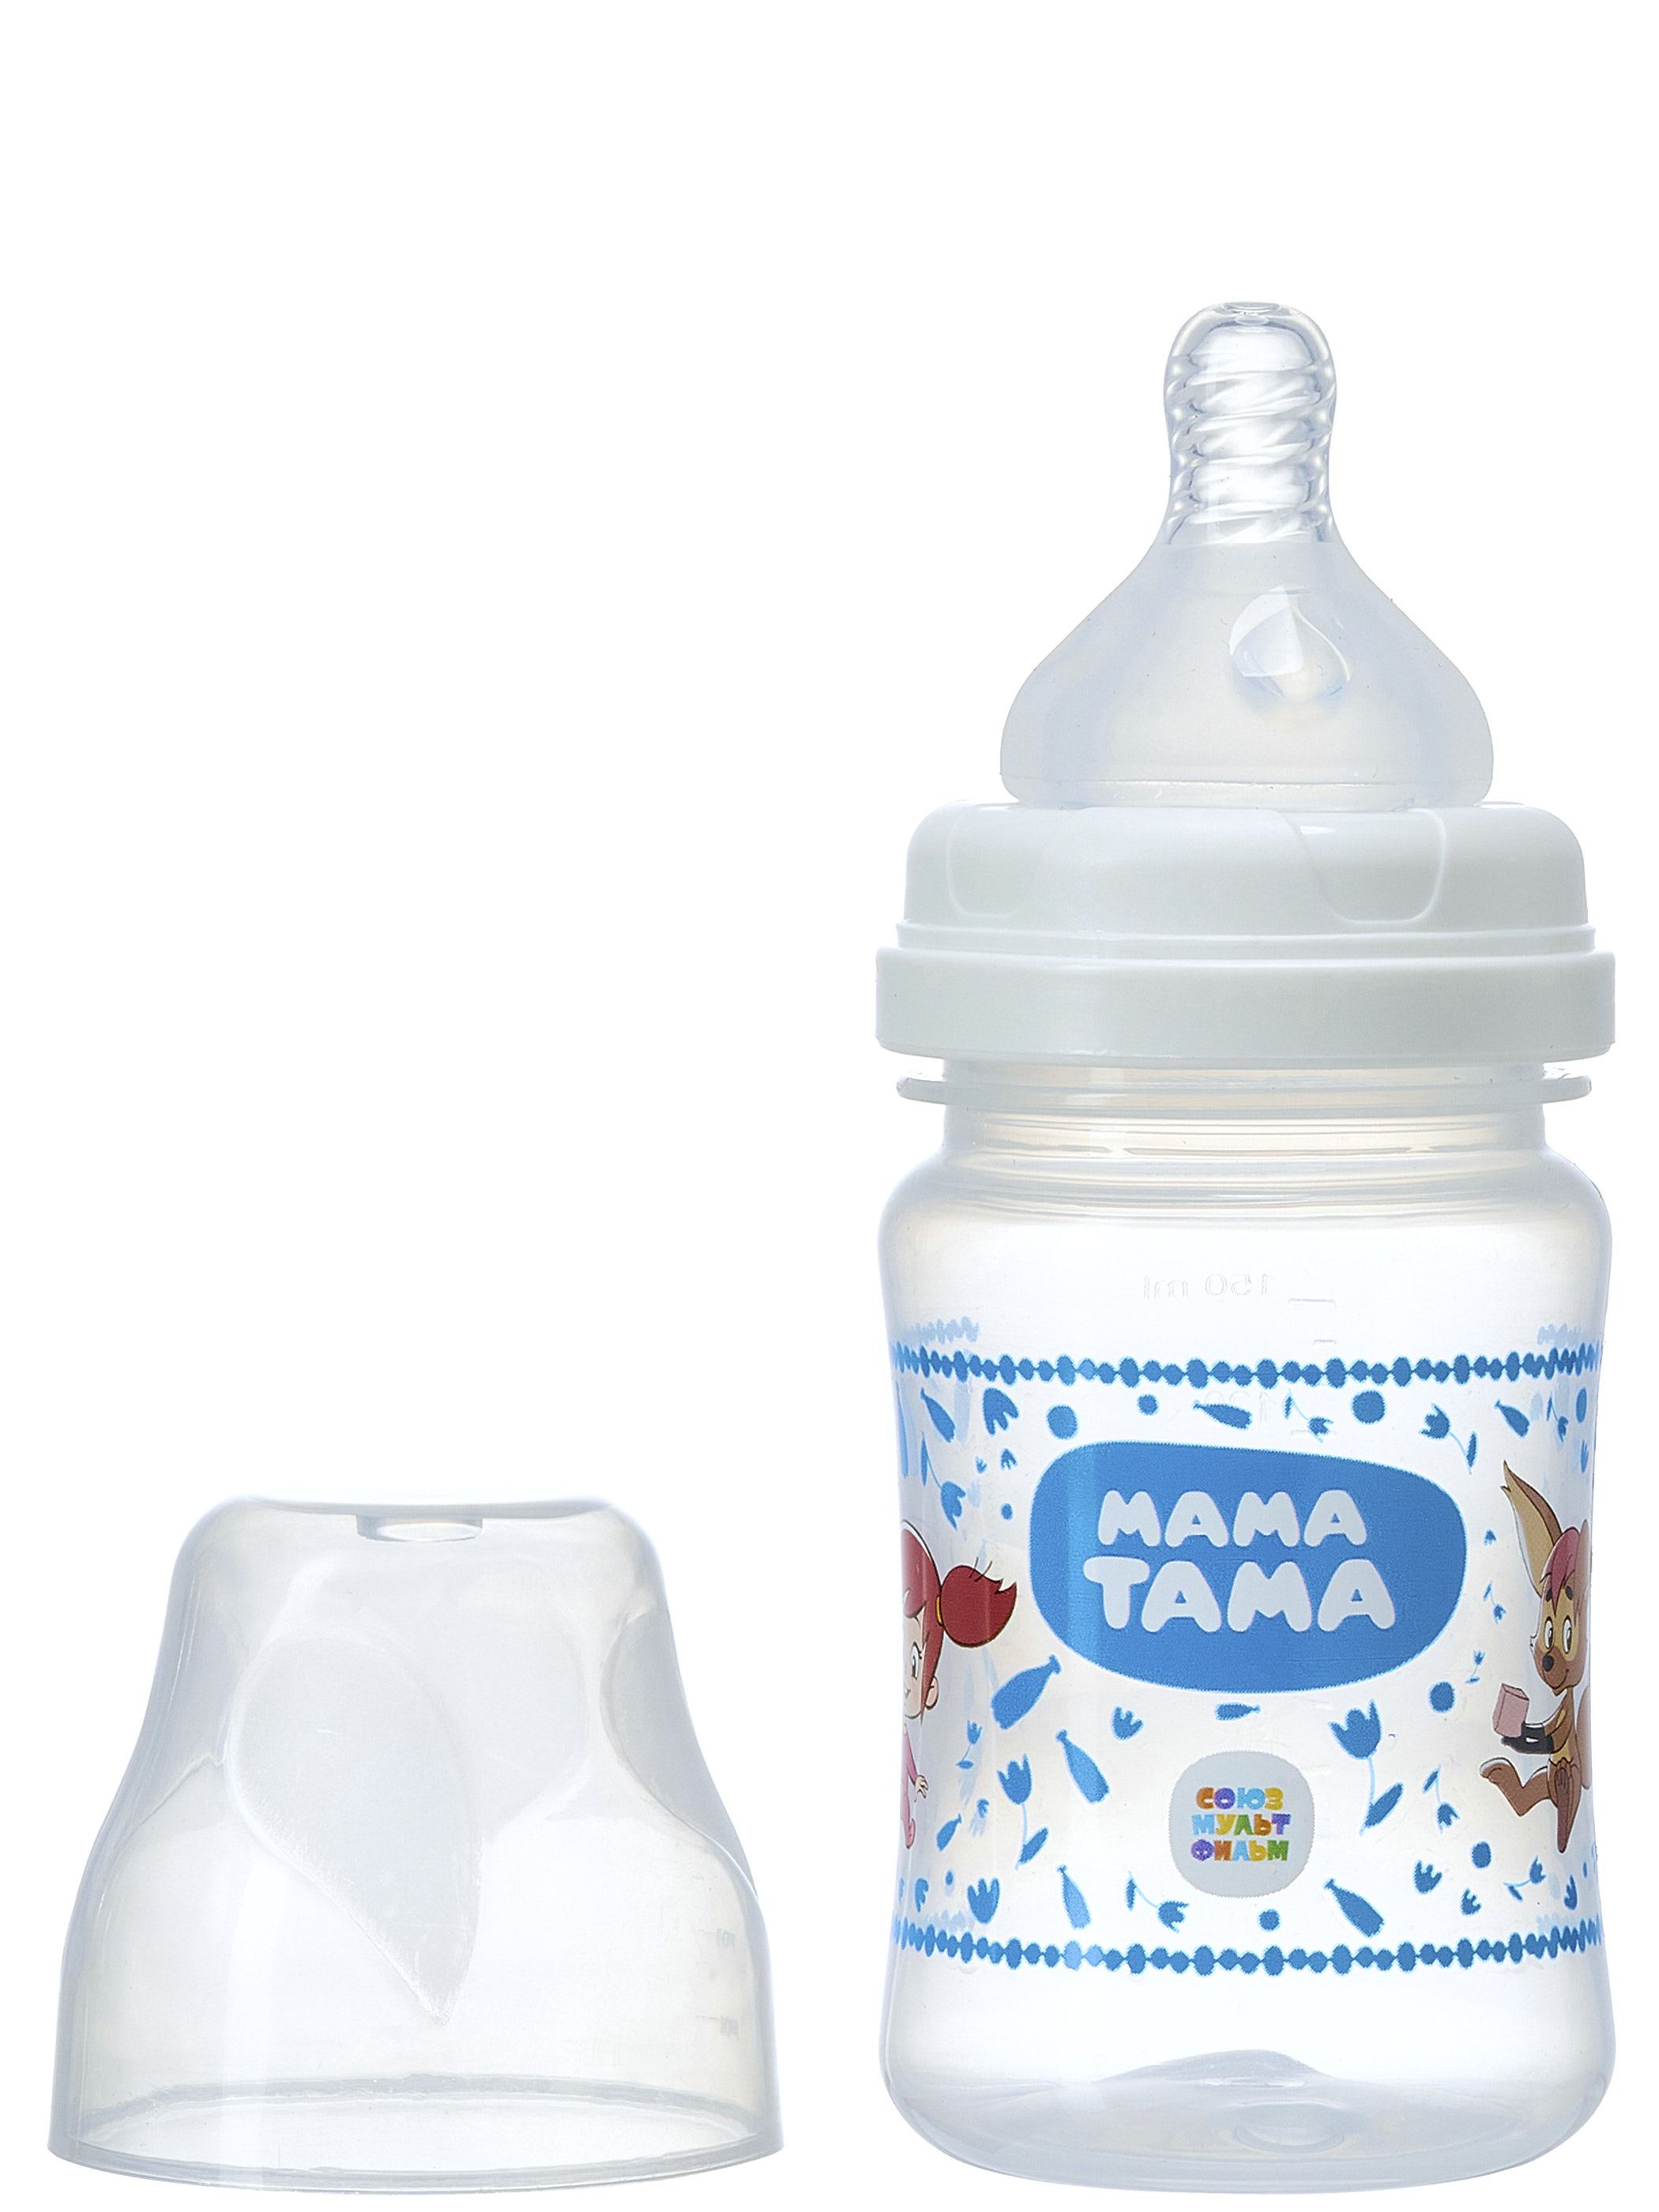 Мама Тама бутылочка широкое горло с силик соской медленный поток 0+ 150мл